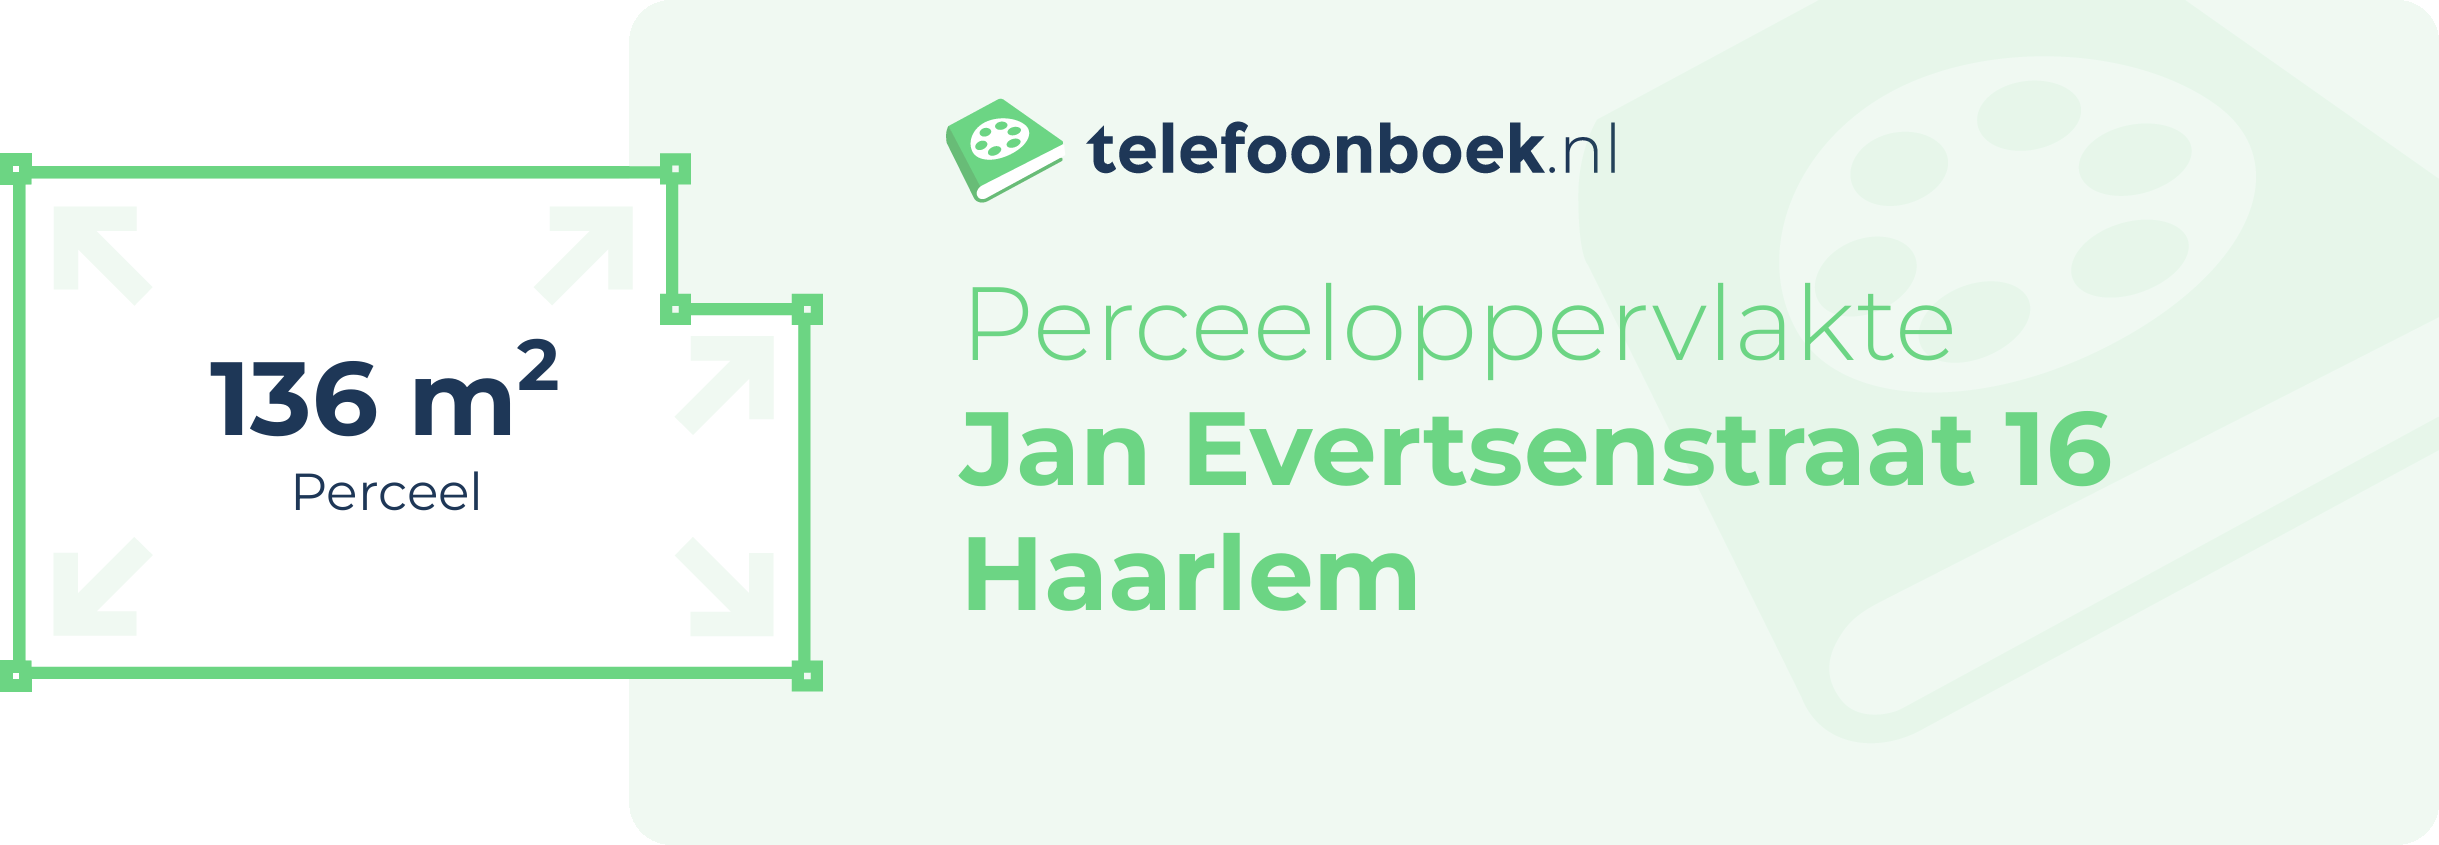 Perceeloppervlakte Jan Evertsenstraat 16 Haarlem